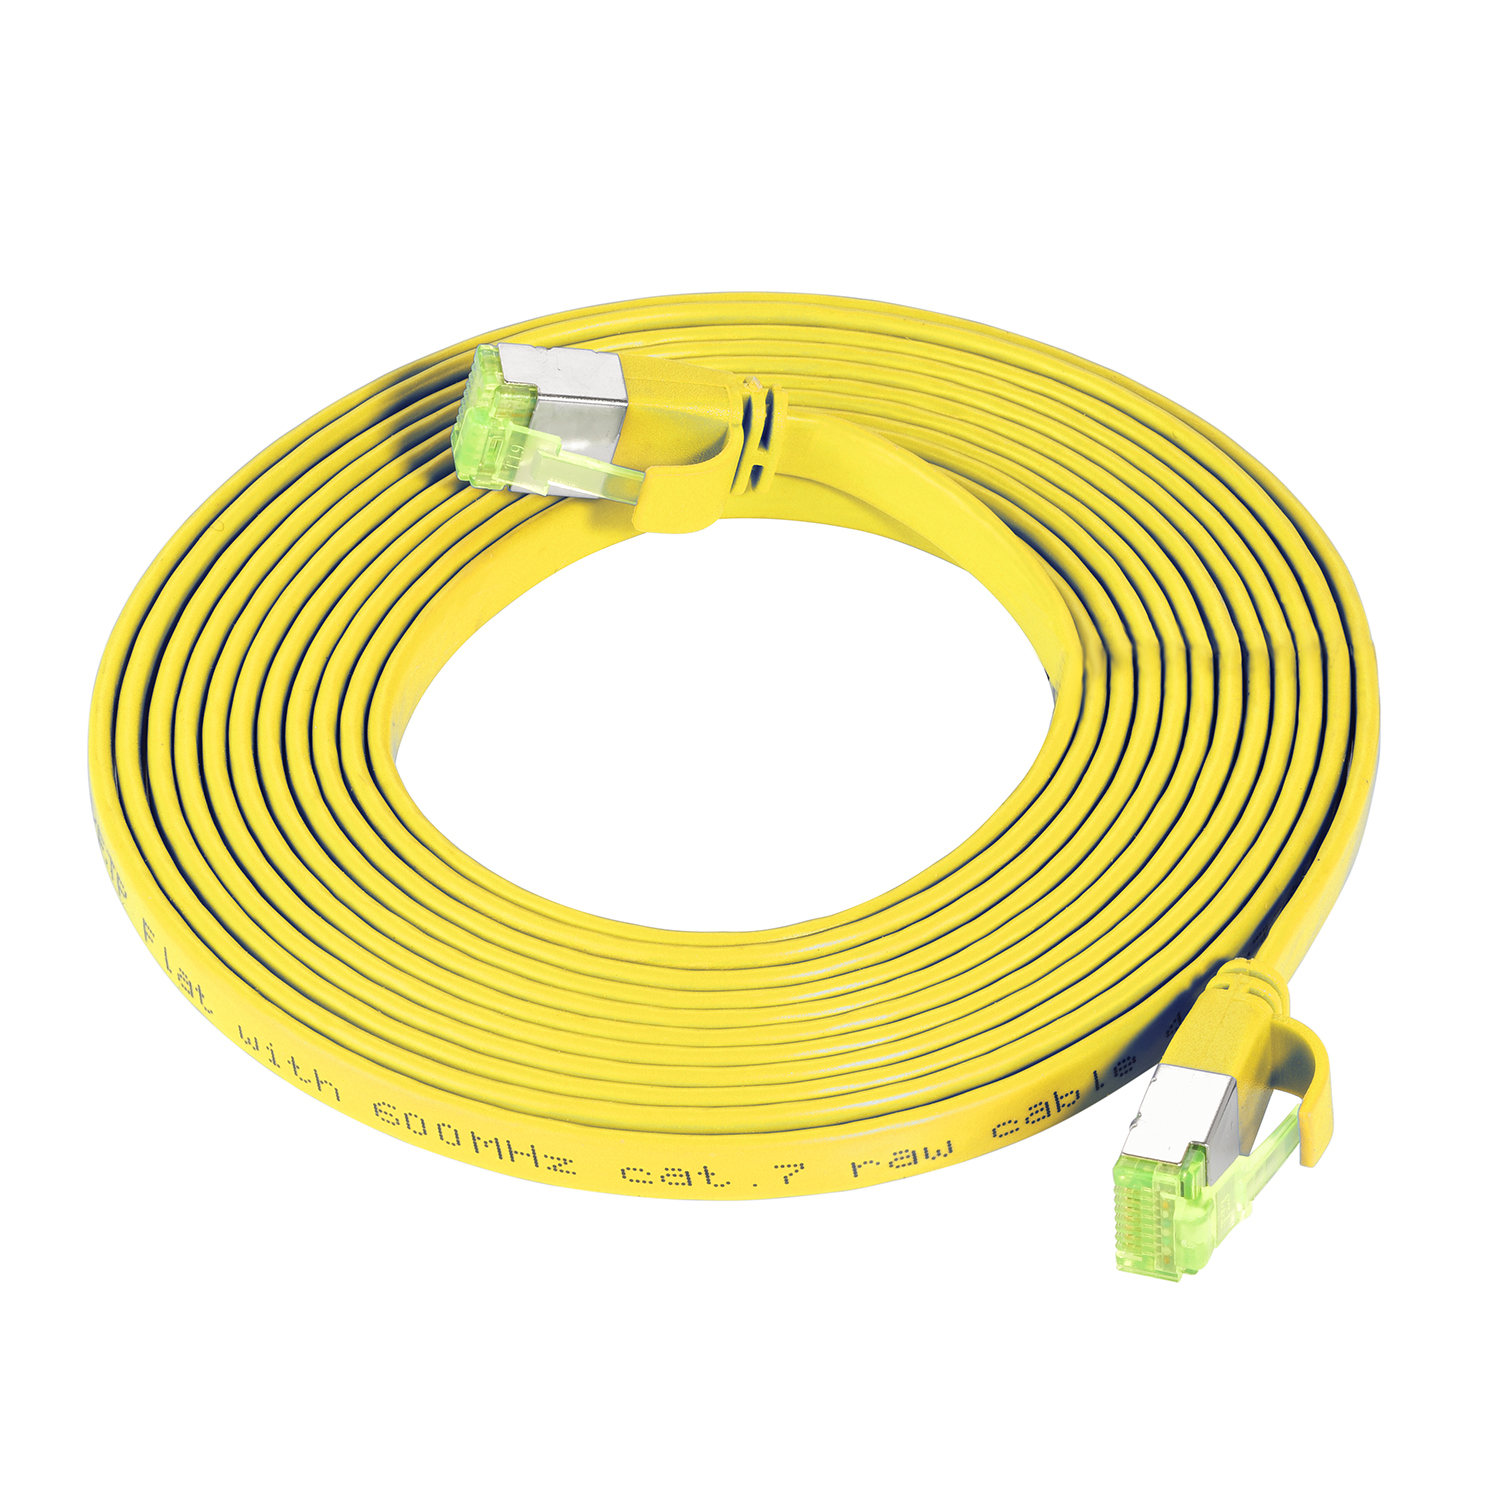 2 Netzwerkkabel, GBit, gelb, Patchkabel U/FTP 10 TPFNET Flachkabel 2m / m